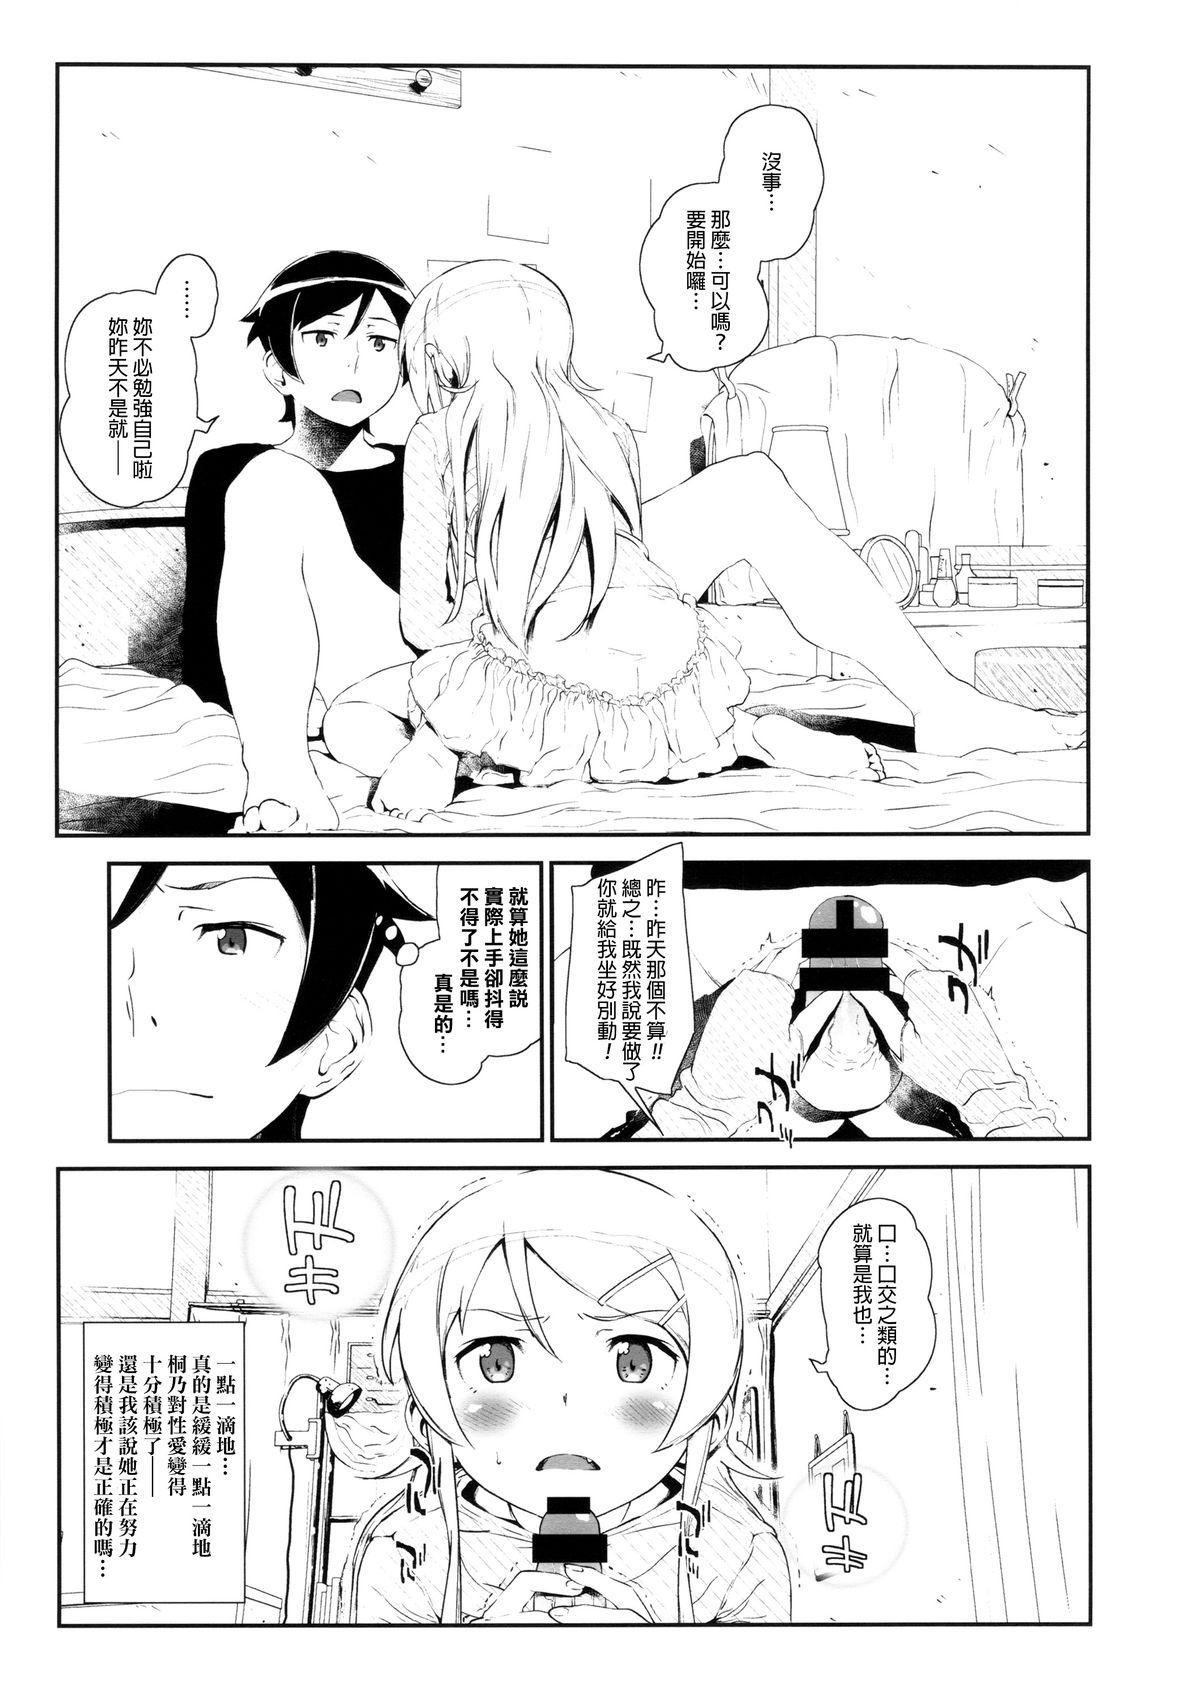 Sucking Cock Hoshikuzu Namida 3 - Ore no imouto ga konna ni kawaii wake ga nai Satin - Page 8